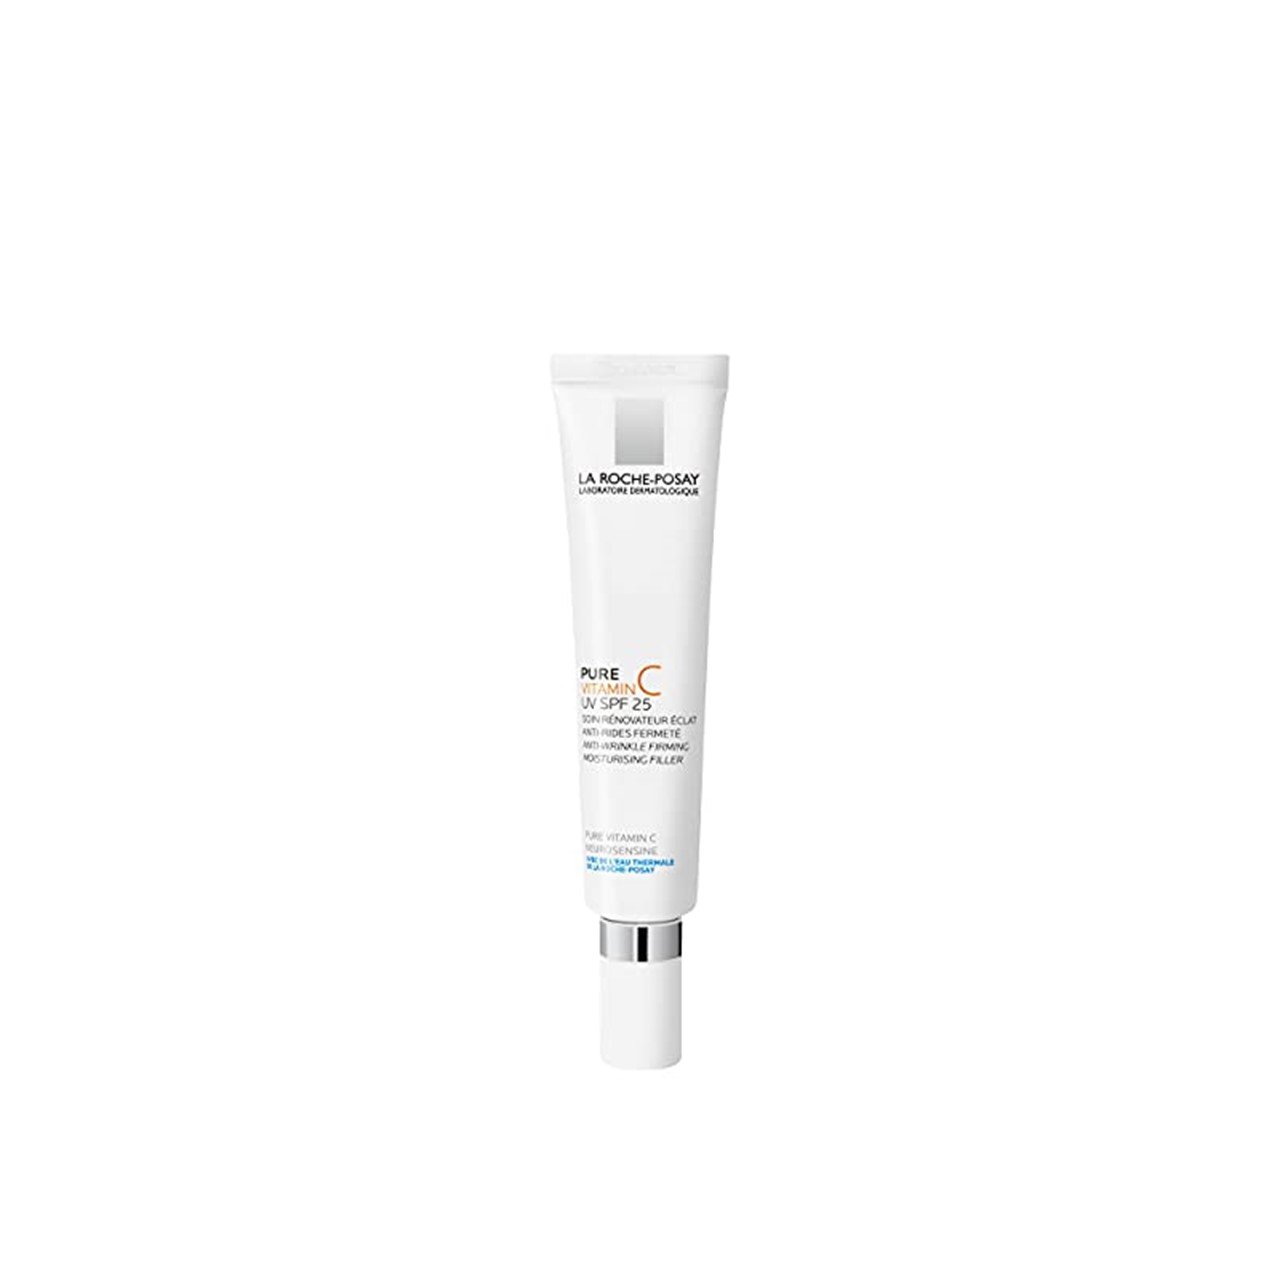 La Roche-Posay Pure Vitamin C UV Anti-Wrinkle Filler SPF25 40ml